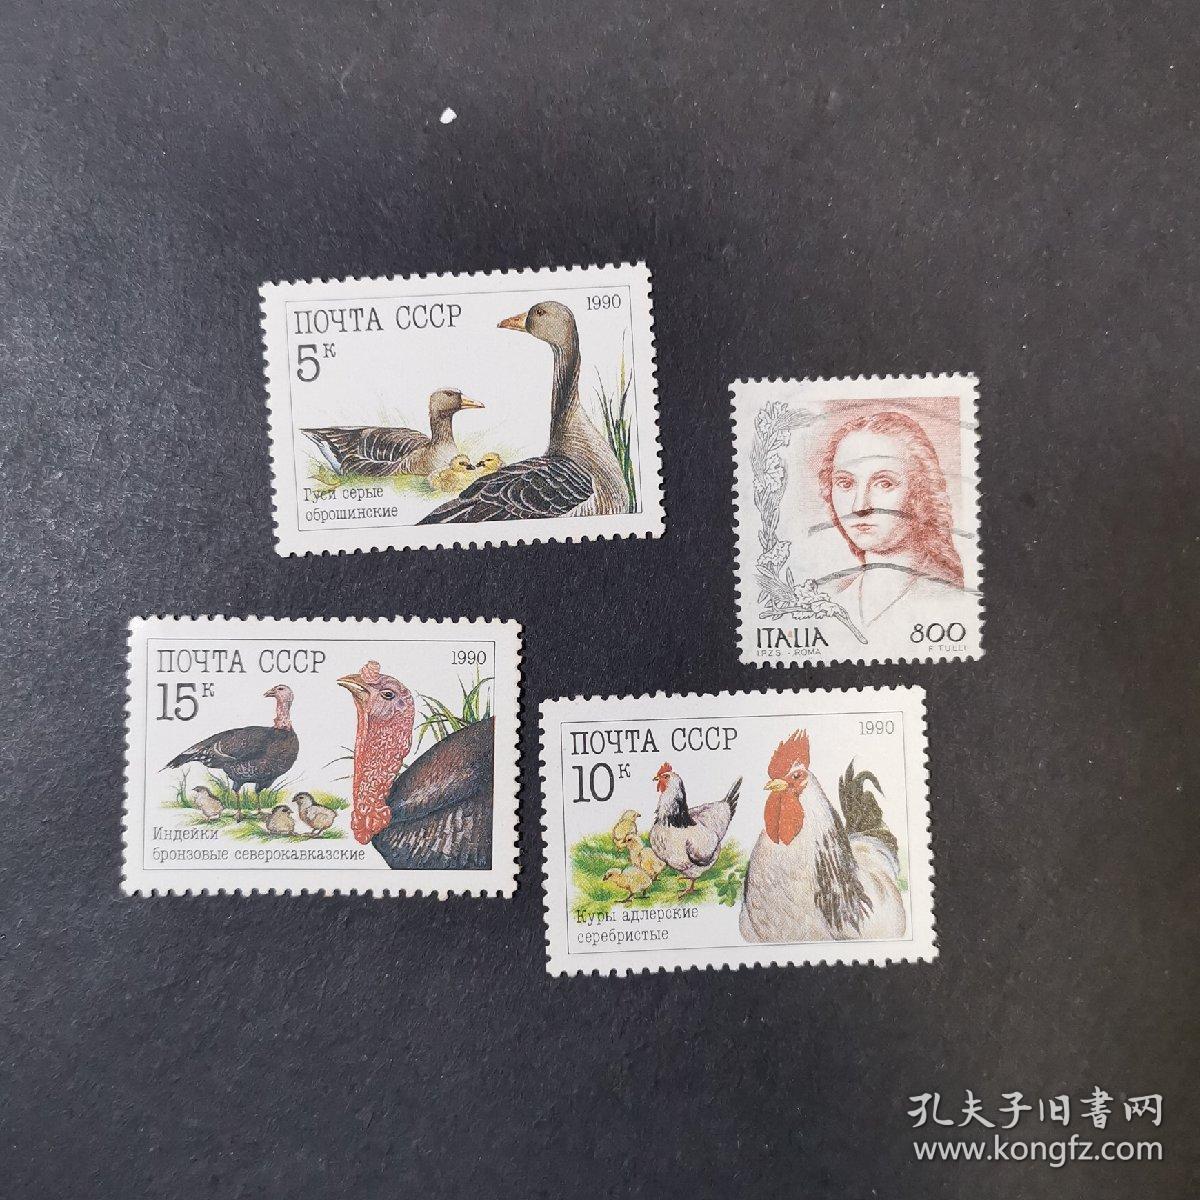 韩国邮票 ·（大公鸡、野鸭、火鸡、尺寸4×3公分）（意大利绘画女子，尺寸2.5×3公分）邮票4枚   精美邮票